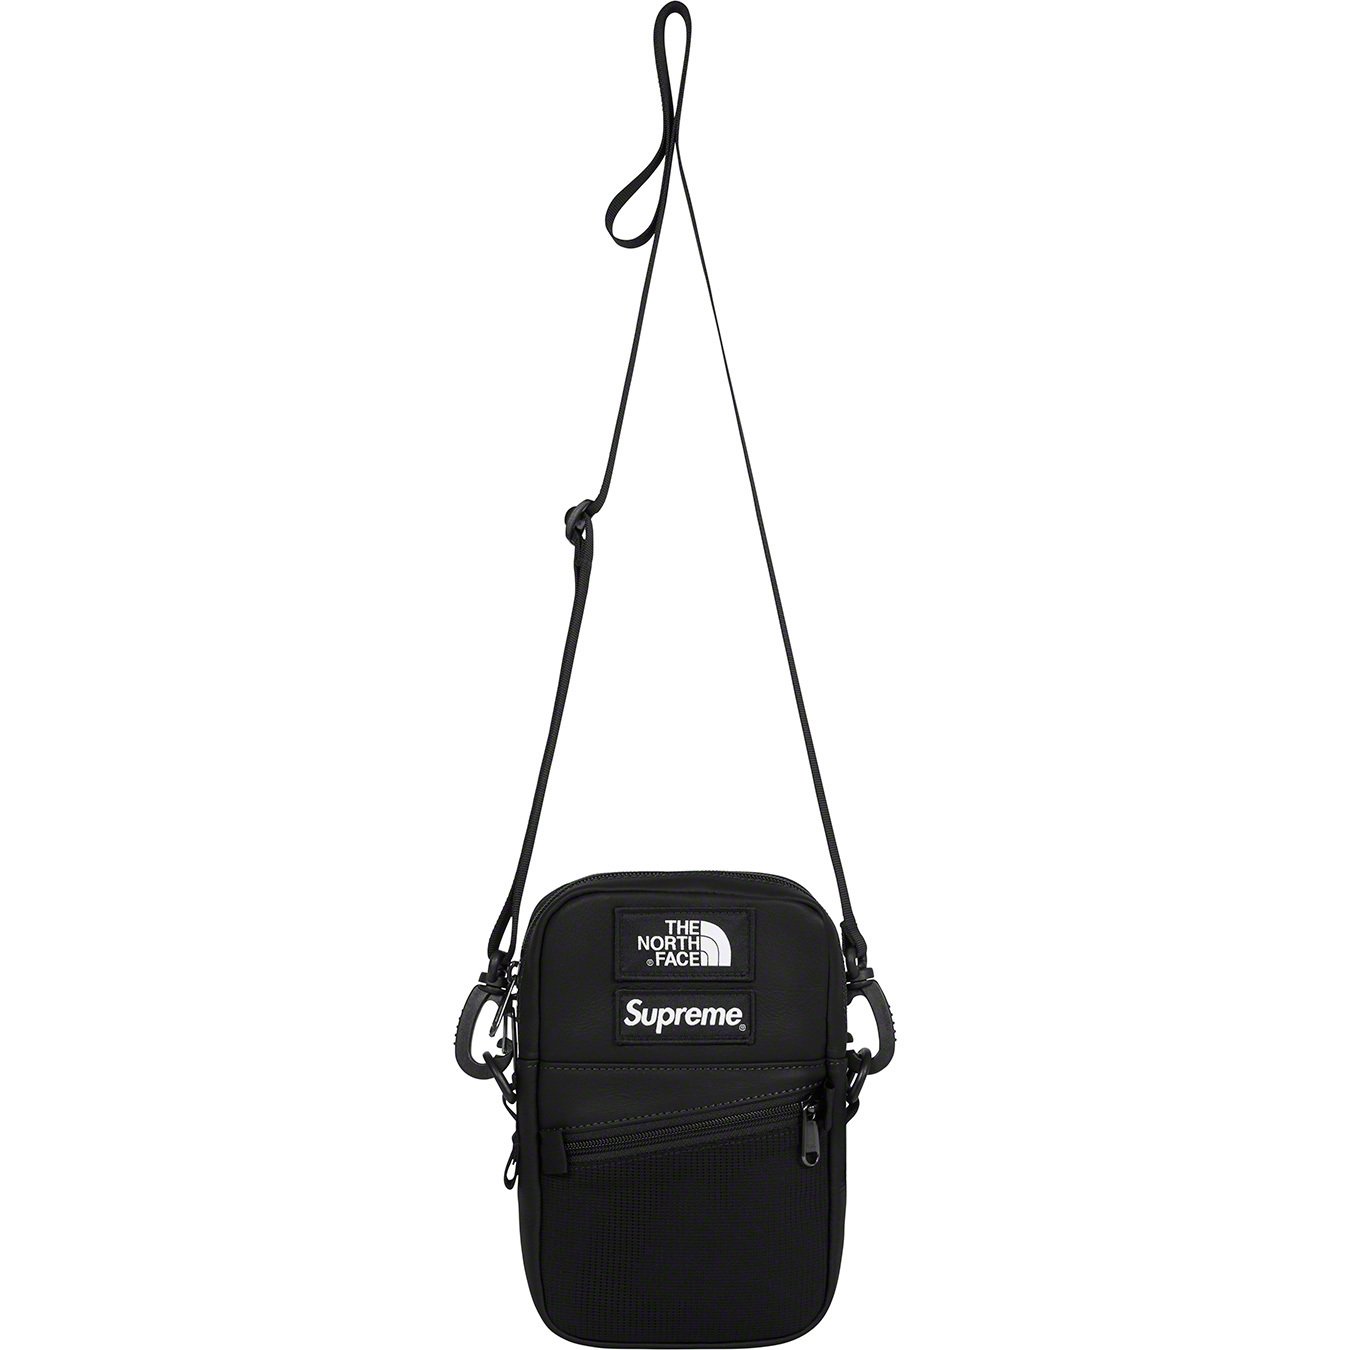 Details Supreme Supreme®/The North Face® Leather Shoulder Bag - Supreme